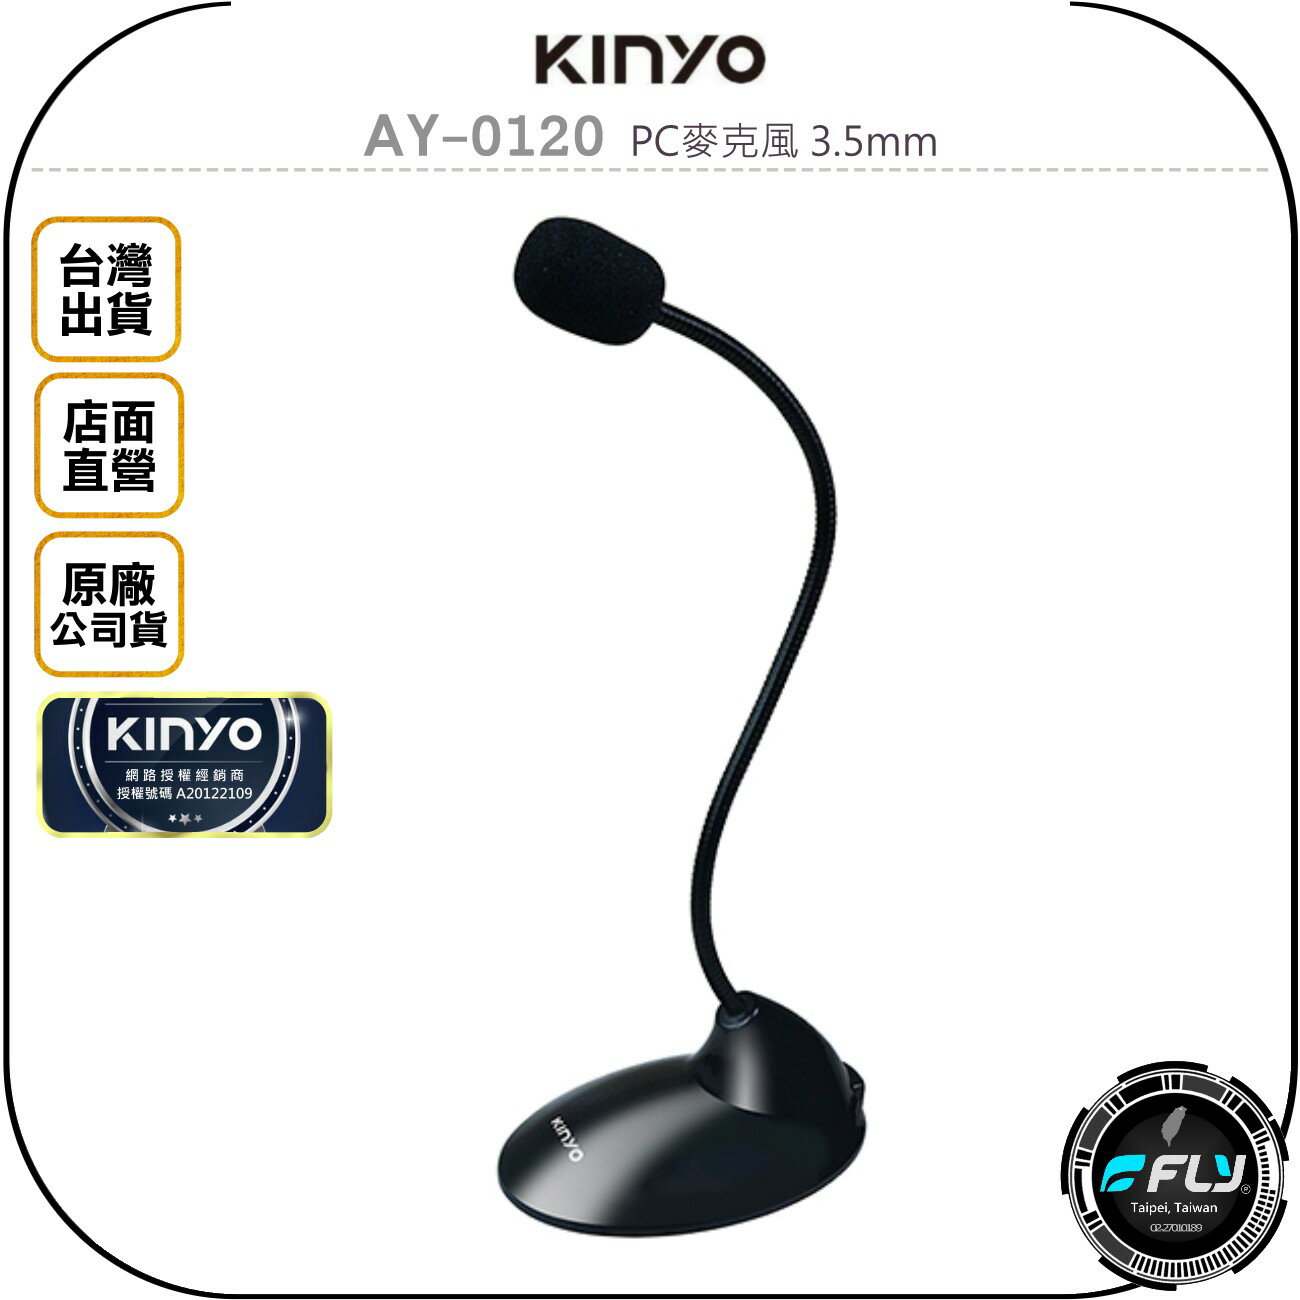 《飛翔無線3C》KINYO 耐嘉 AY-0120 PC麥克風 3.5mm◉公司貨◉電腦收音◉蛇形軟管◉視訊通話